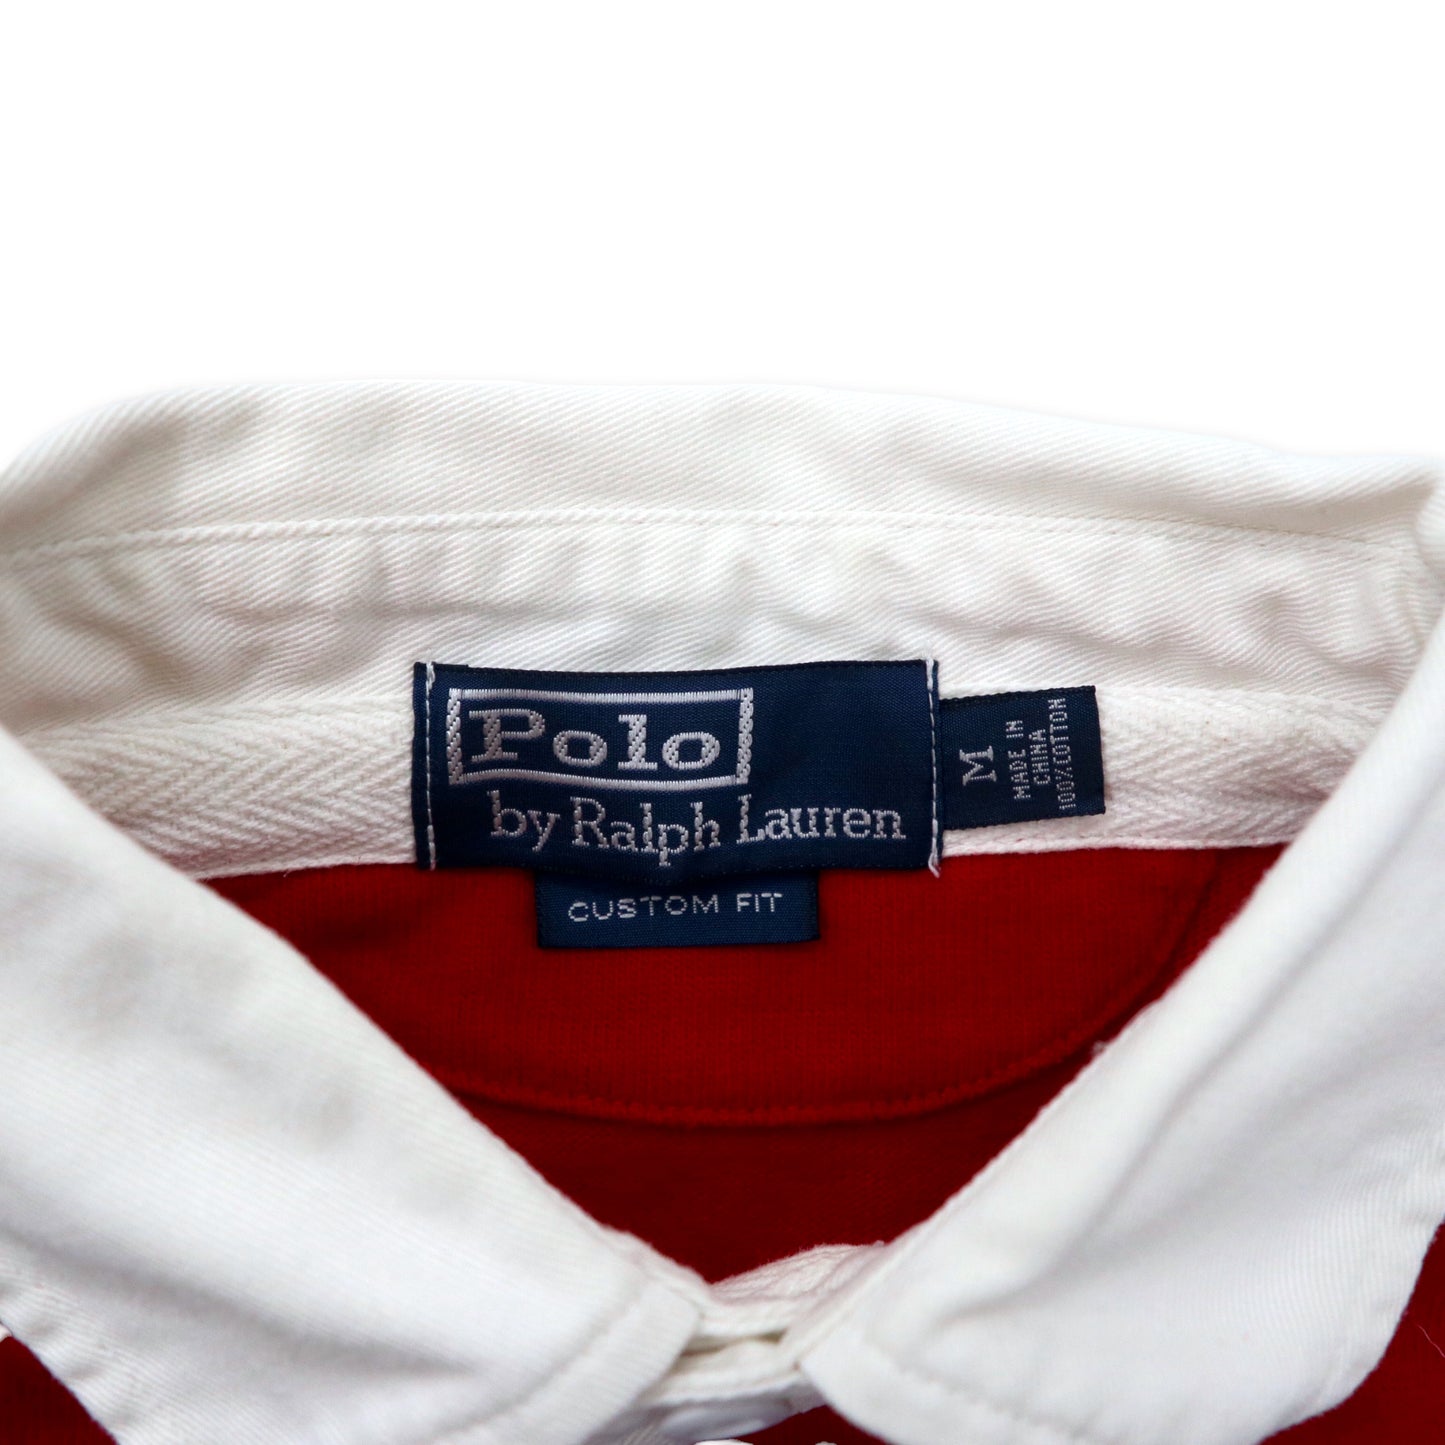 Polo by Ralph Lauren マルチボーダー ラガーシャツ M マルチカラー コットン スモールポニー刺繍 CUSTOM FIT